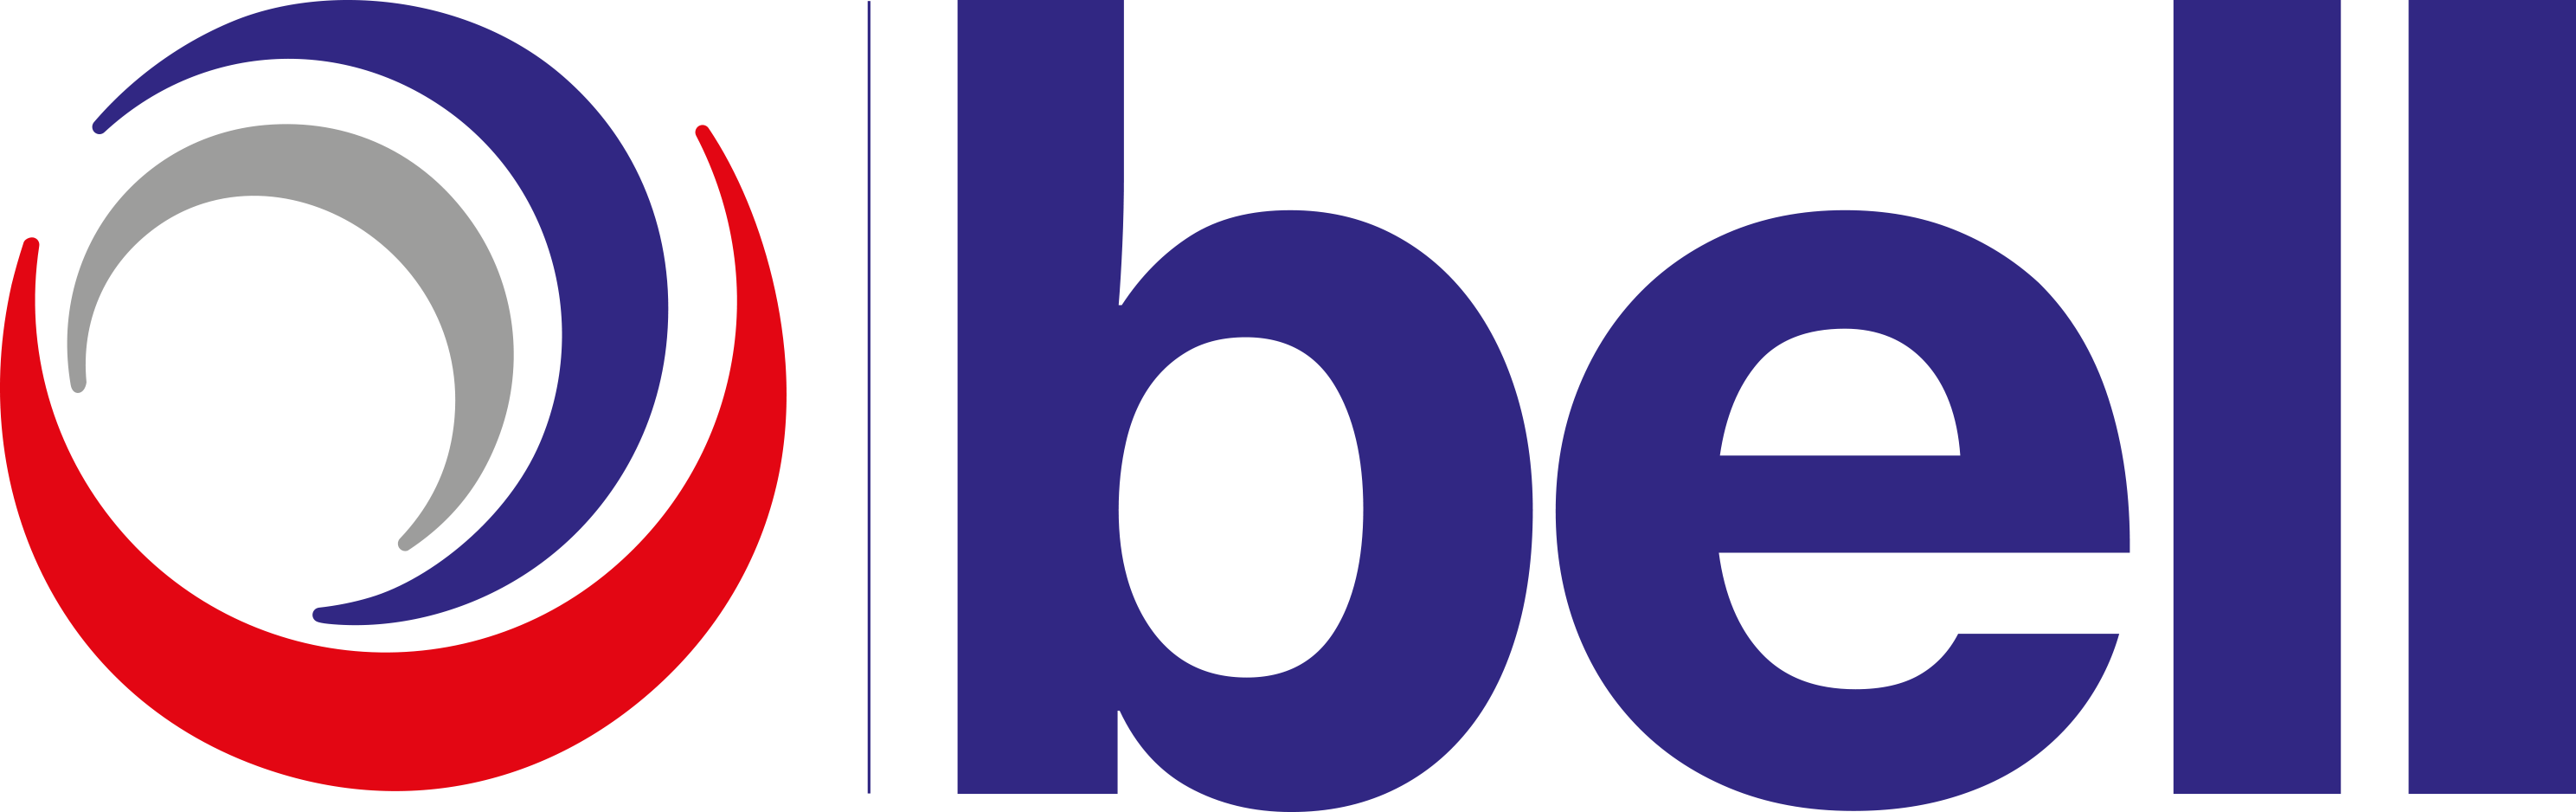 Bell Group logo